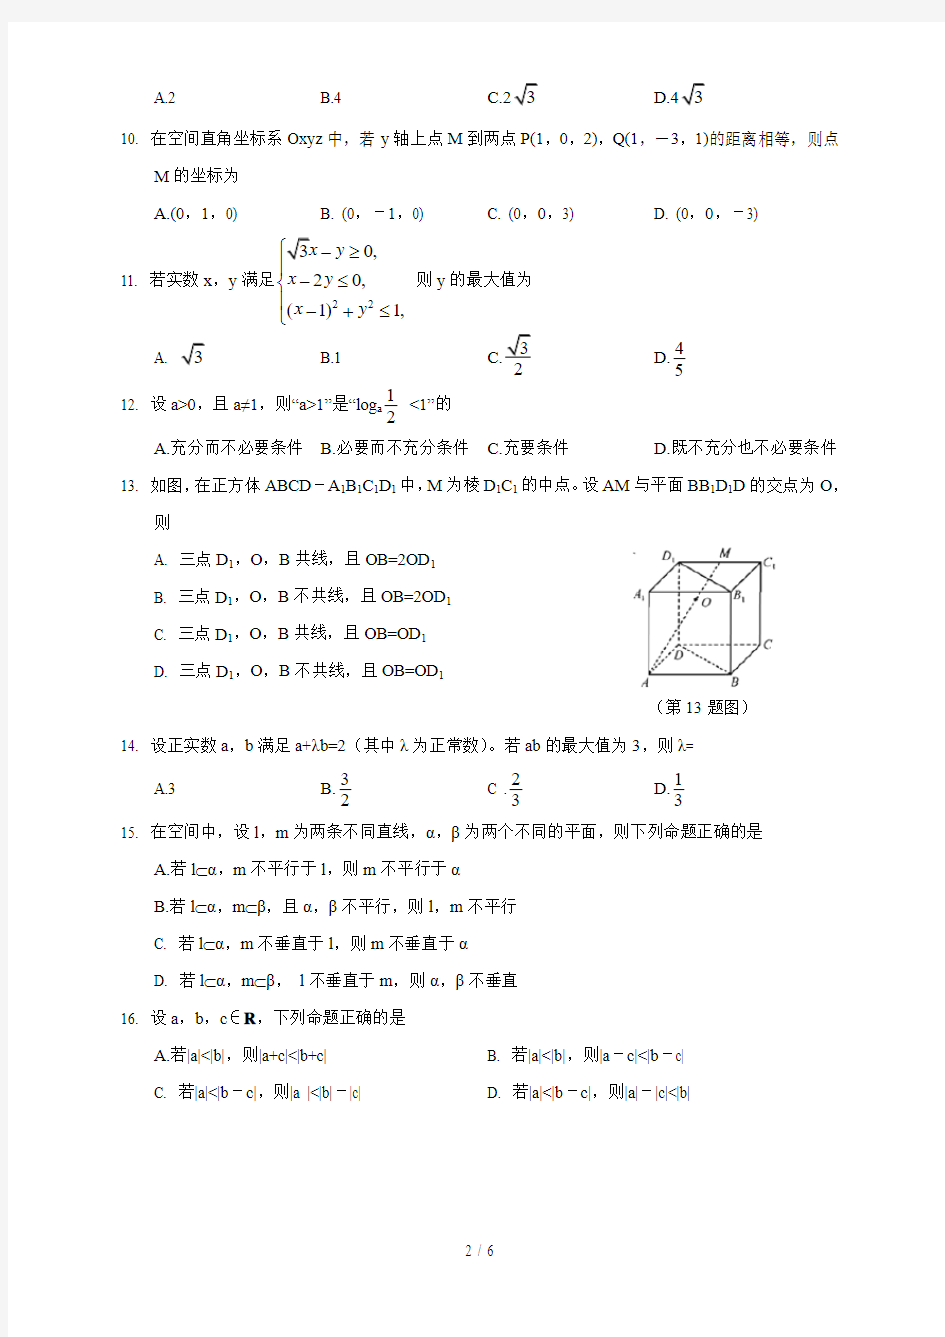 2015年10浙江省高中数学学考试题及标准答案(高清WORD版)